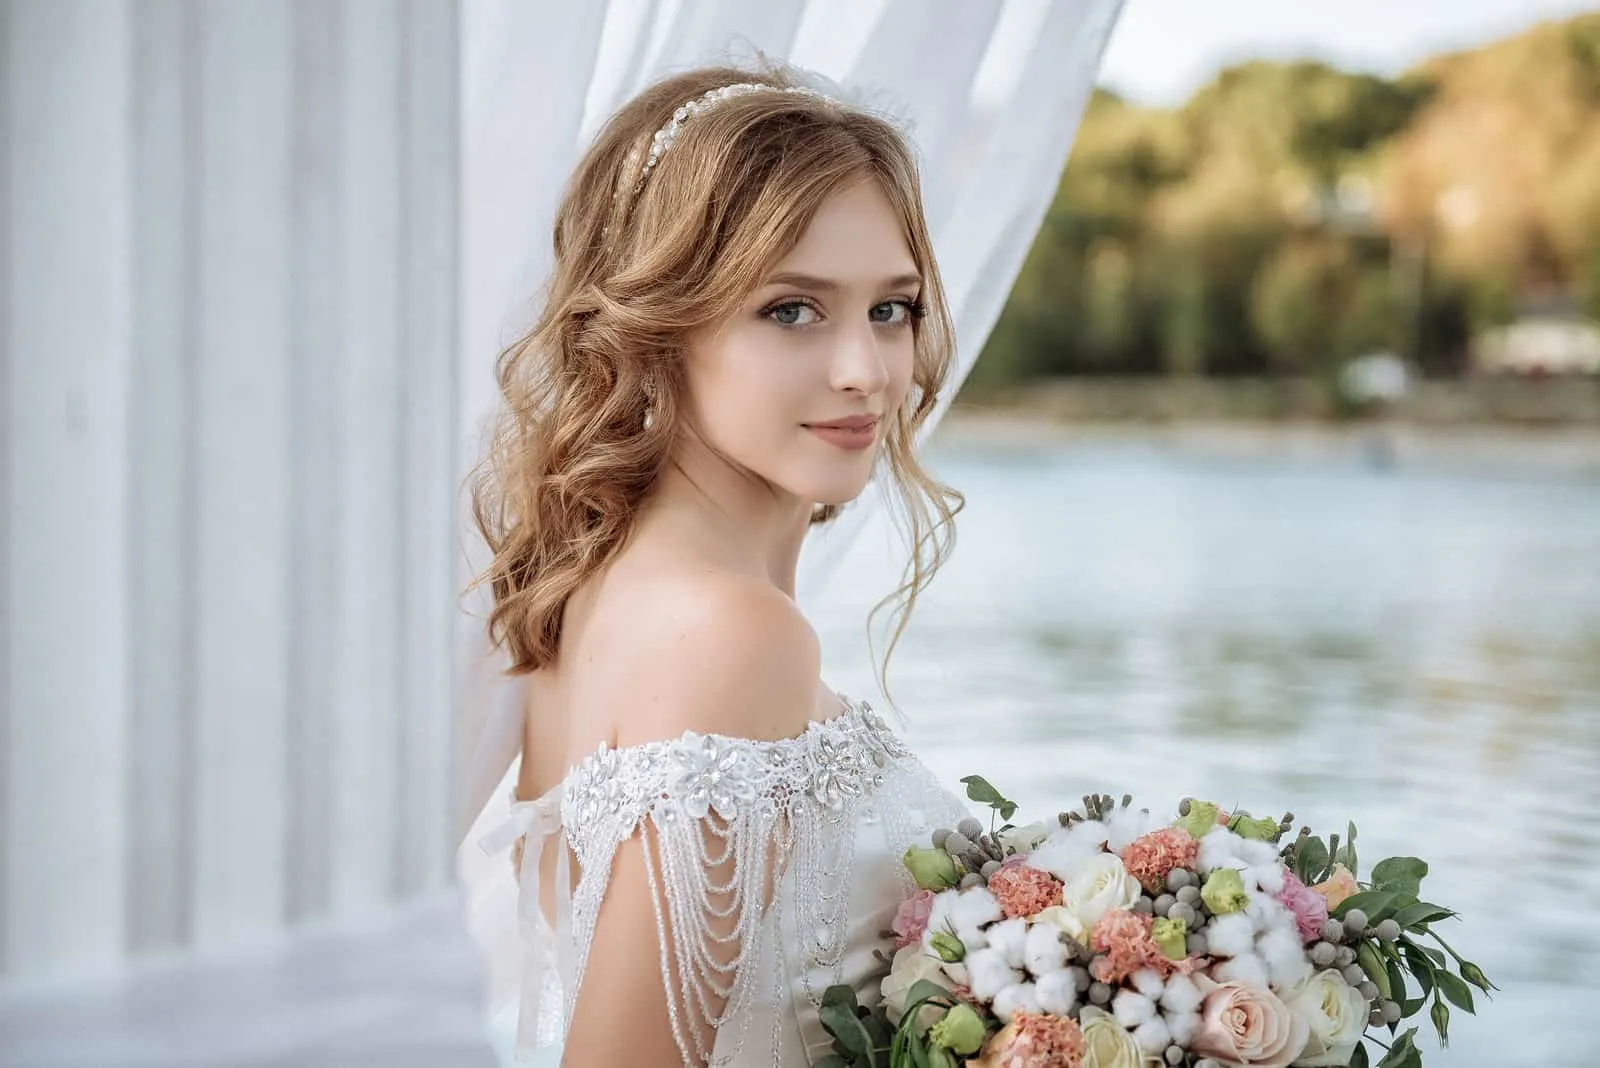 Braut mit Hochzeitsblumenstrauß